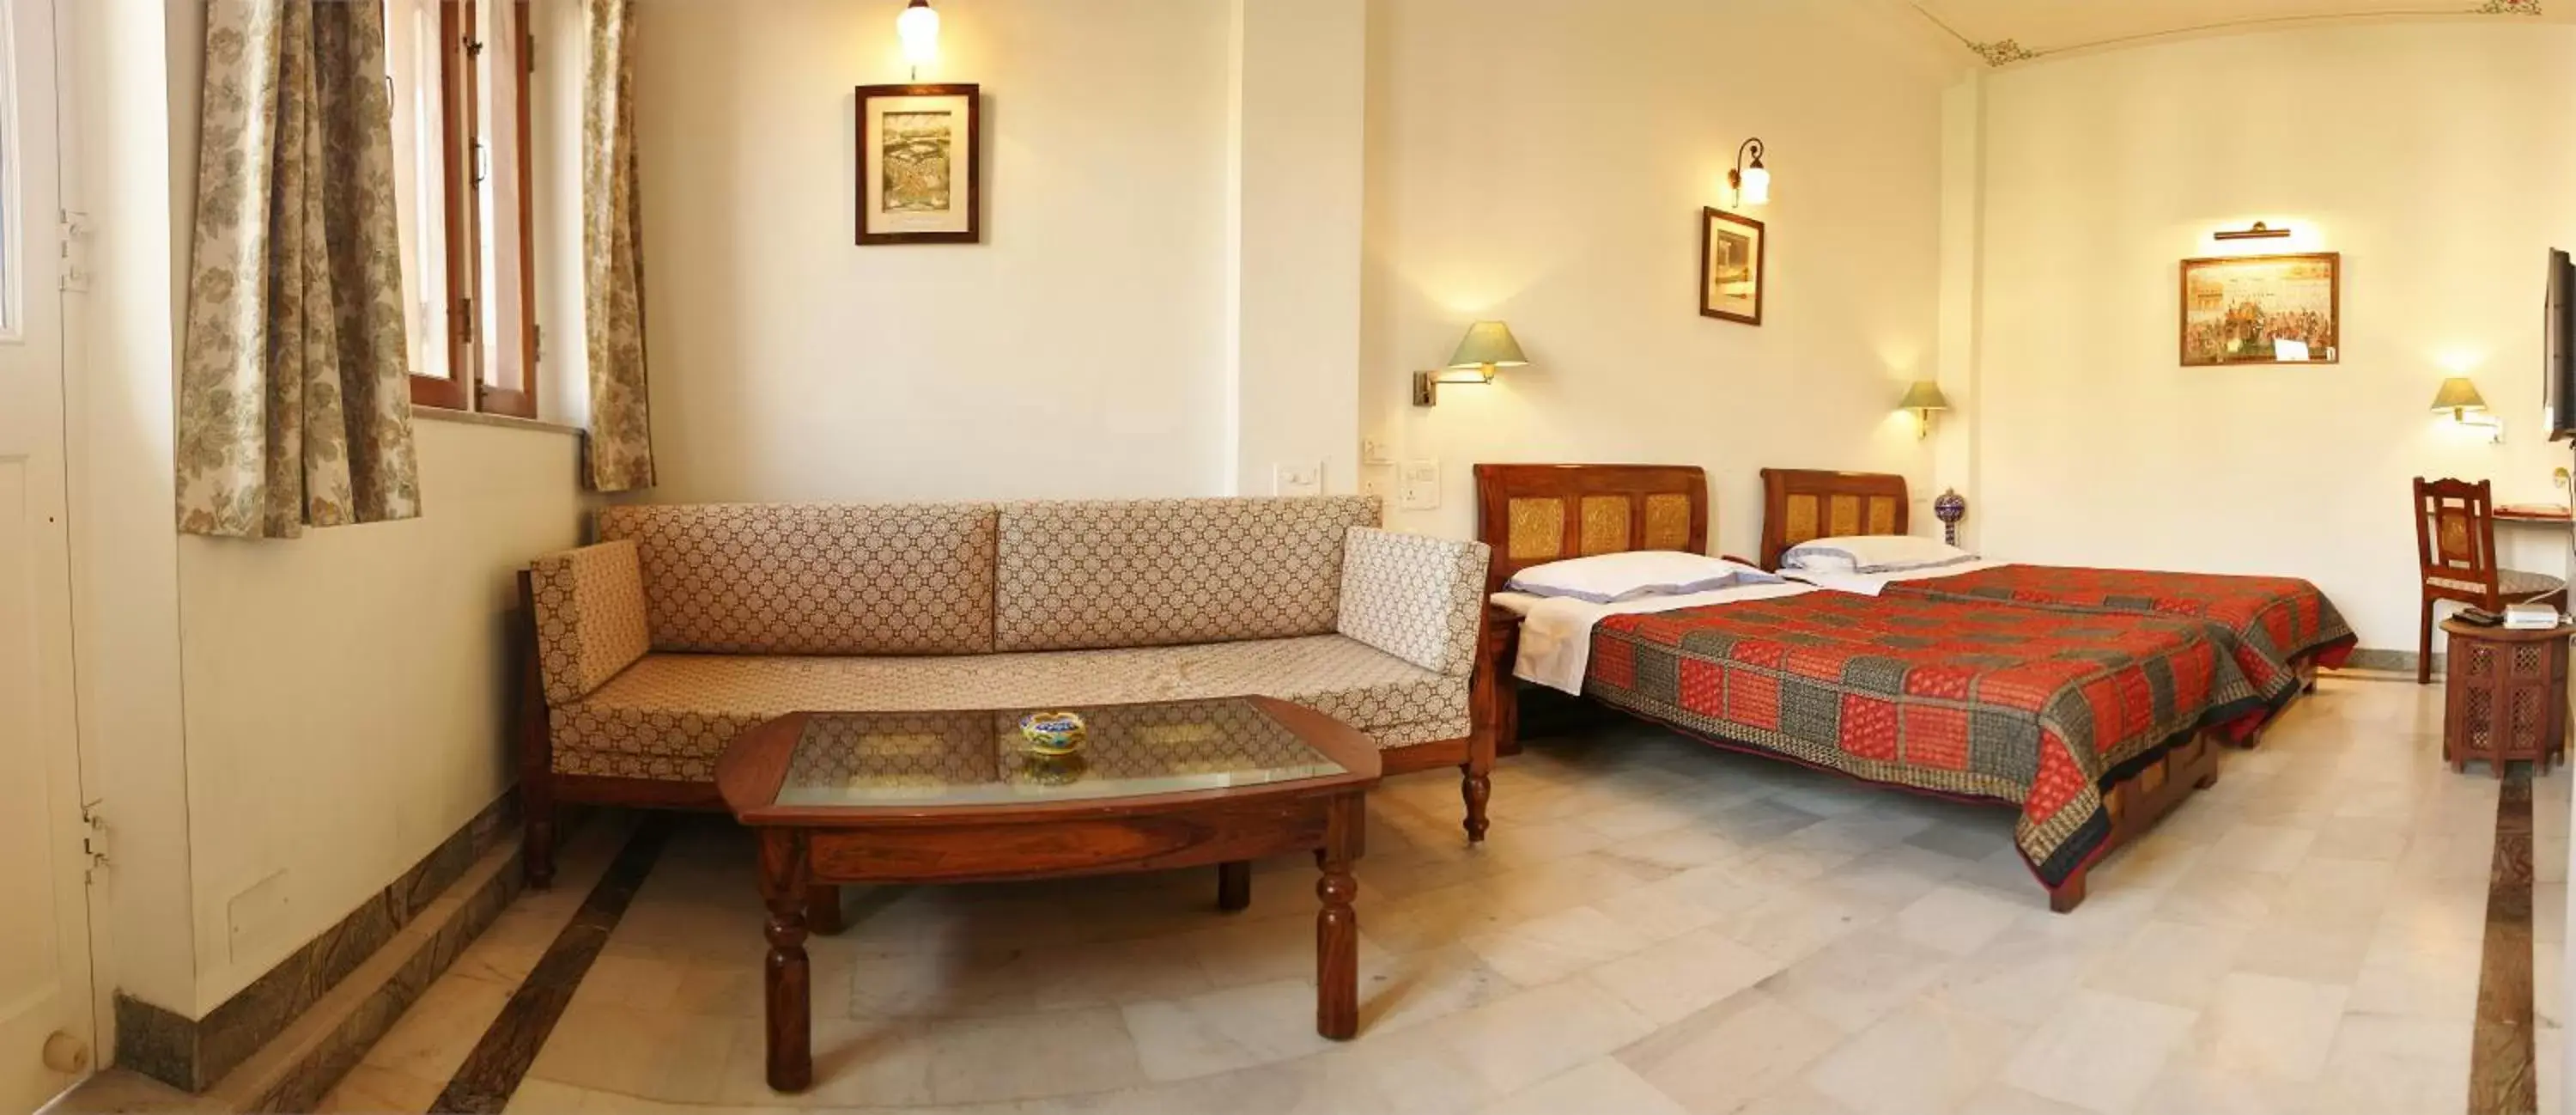 Bedroom in Hotel Arya Niwas